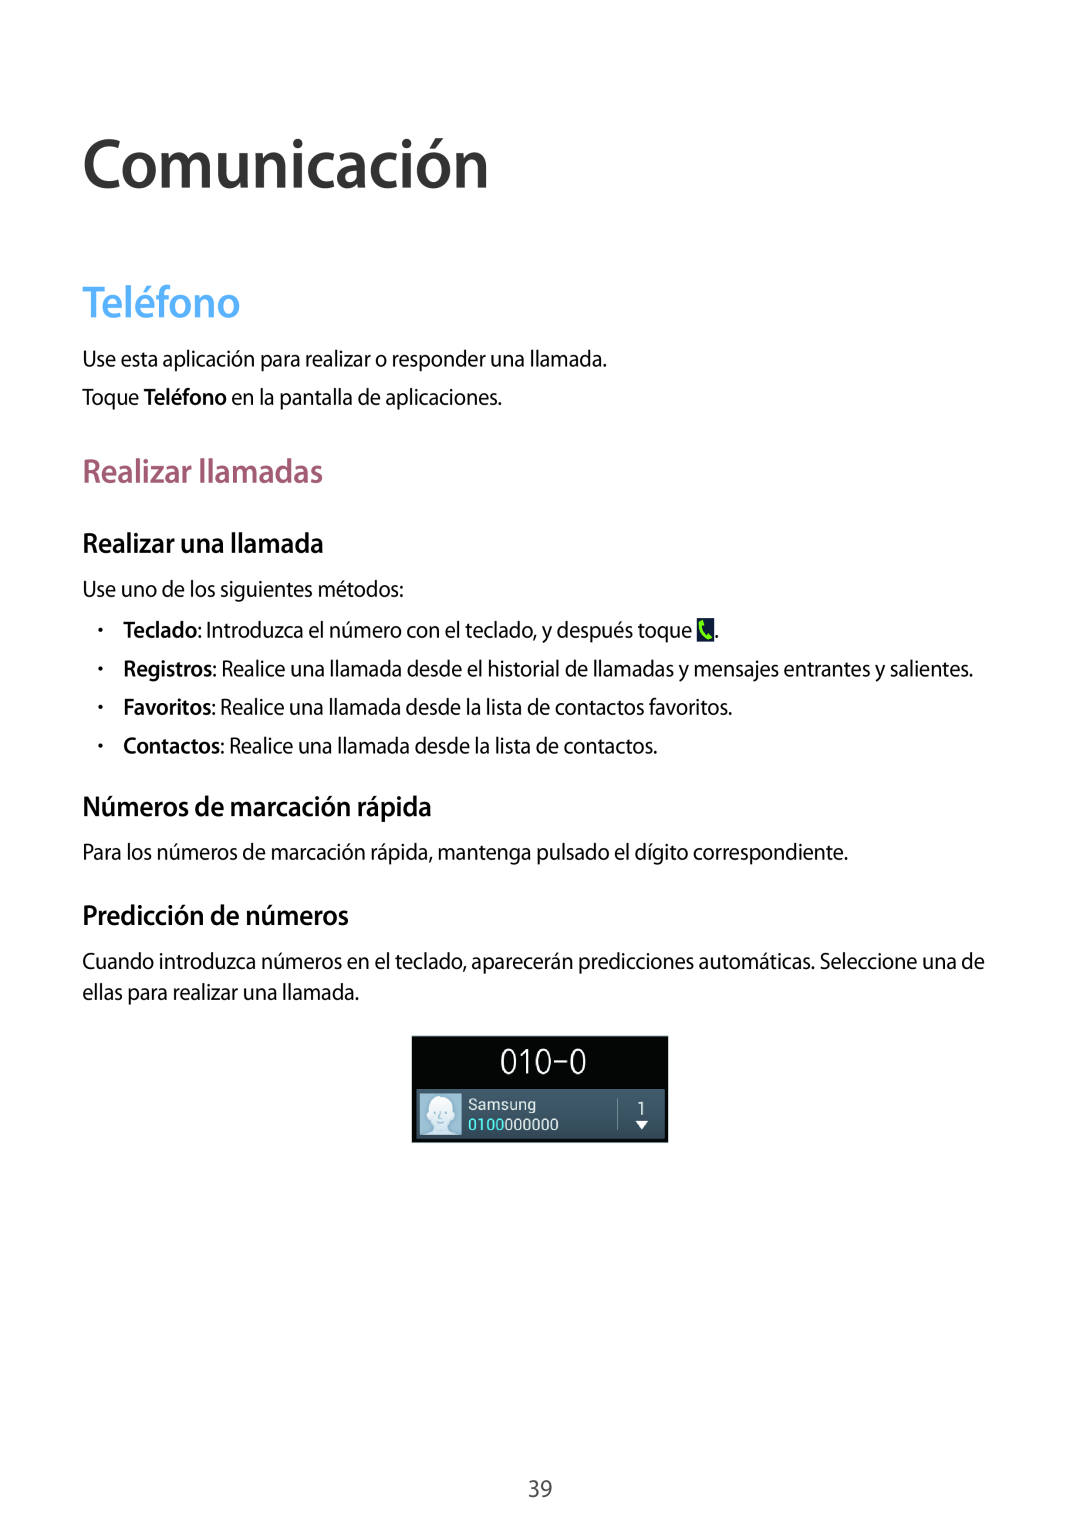 Samsung GT-S7275HKNTPH manual Comunicación, Teléfono, Realizar llamadas, Realizar una llamada, Números de marcación rápida 